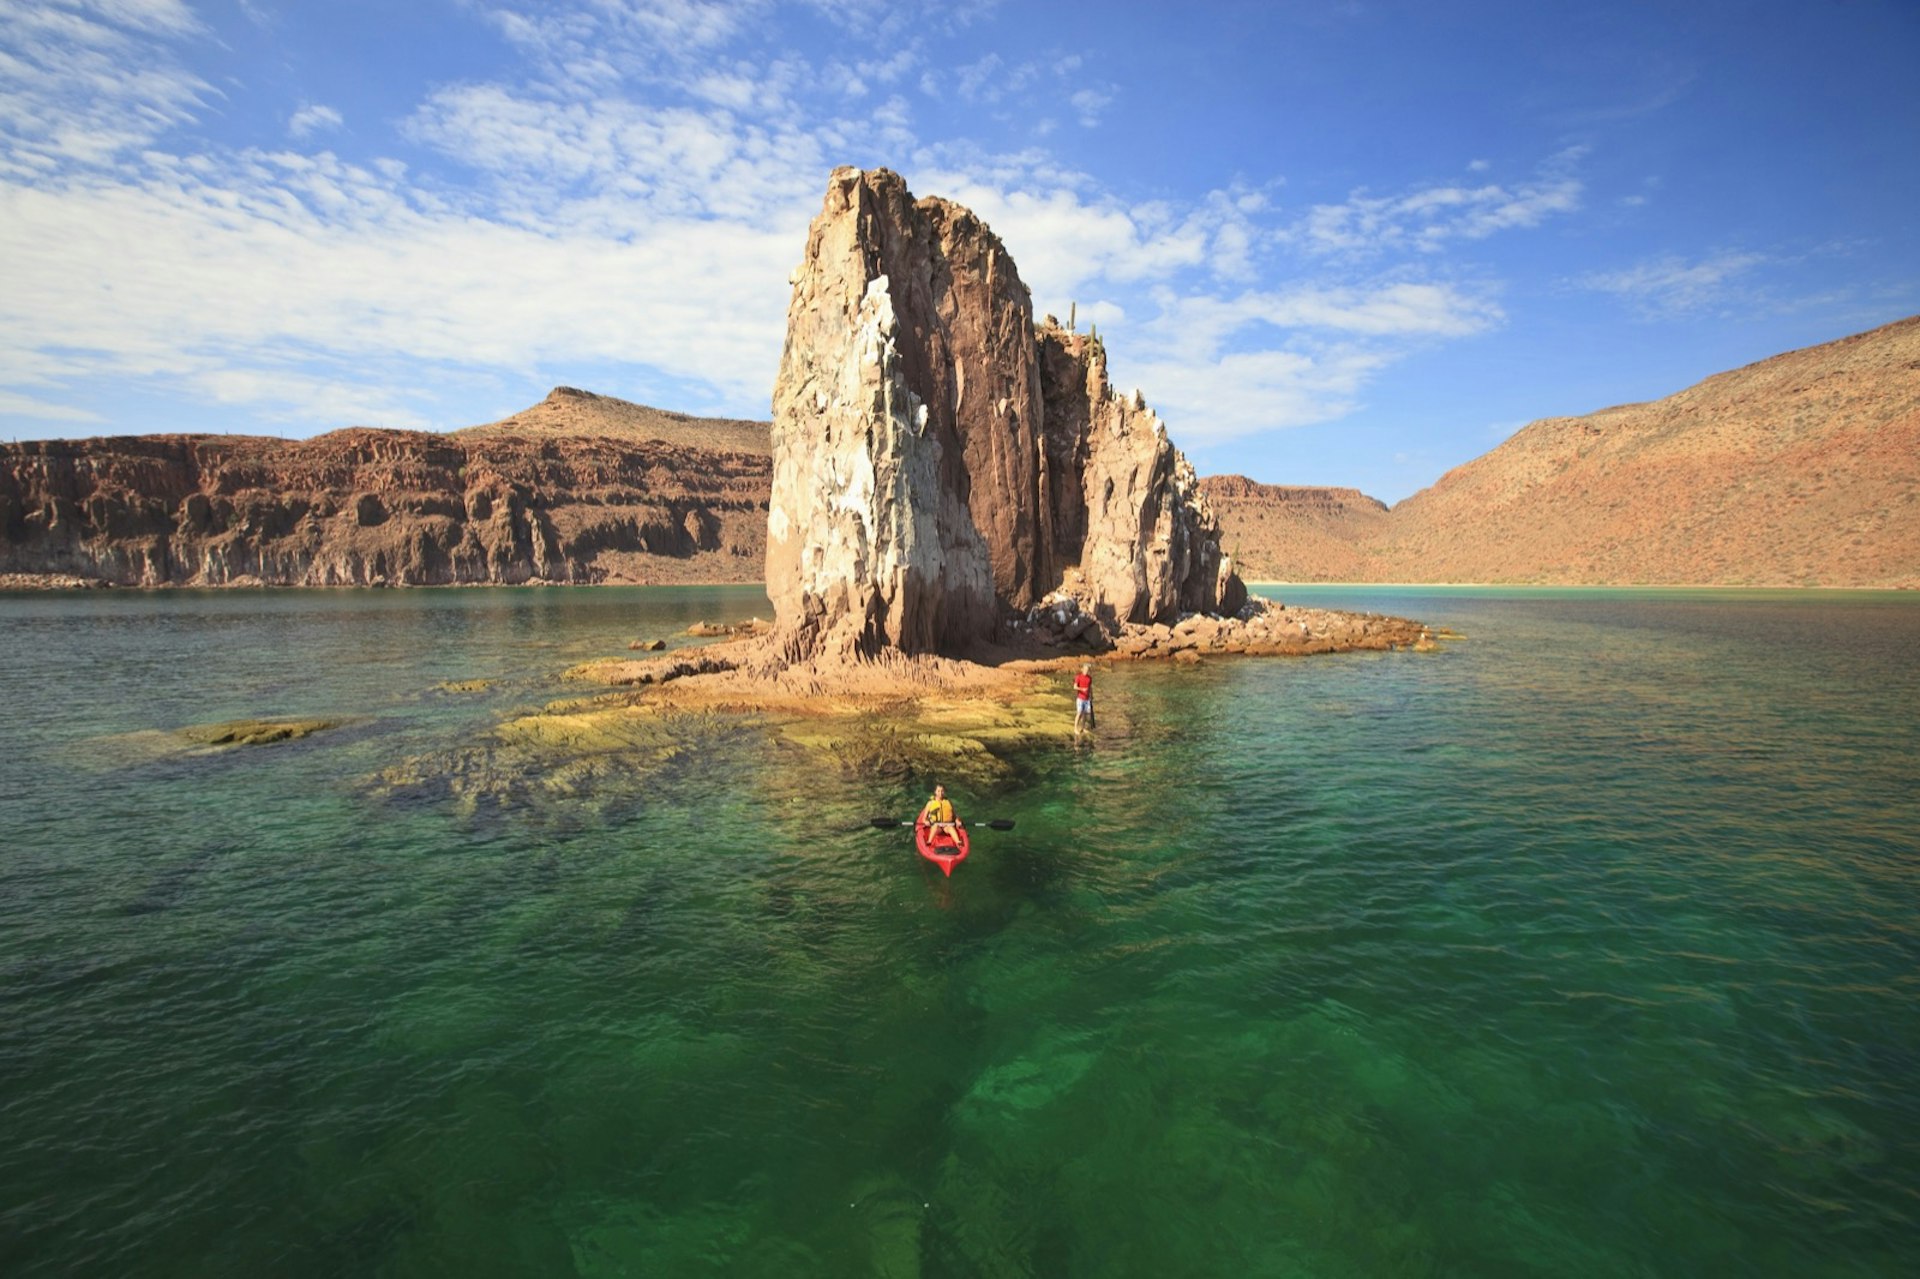 a kayaker paddles past a rocky island